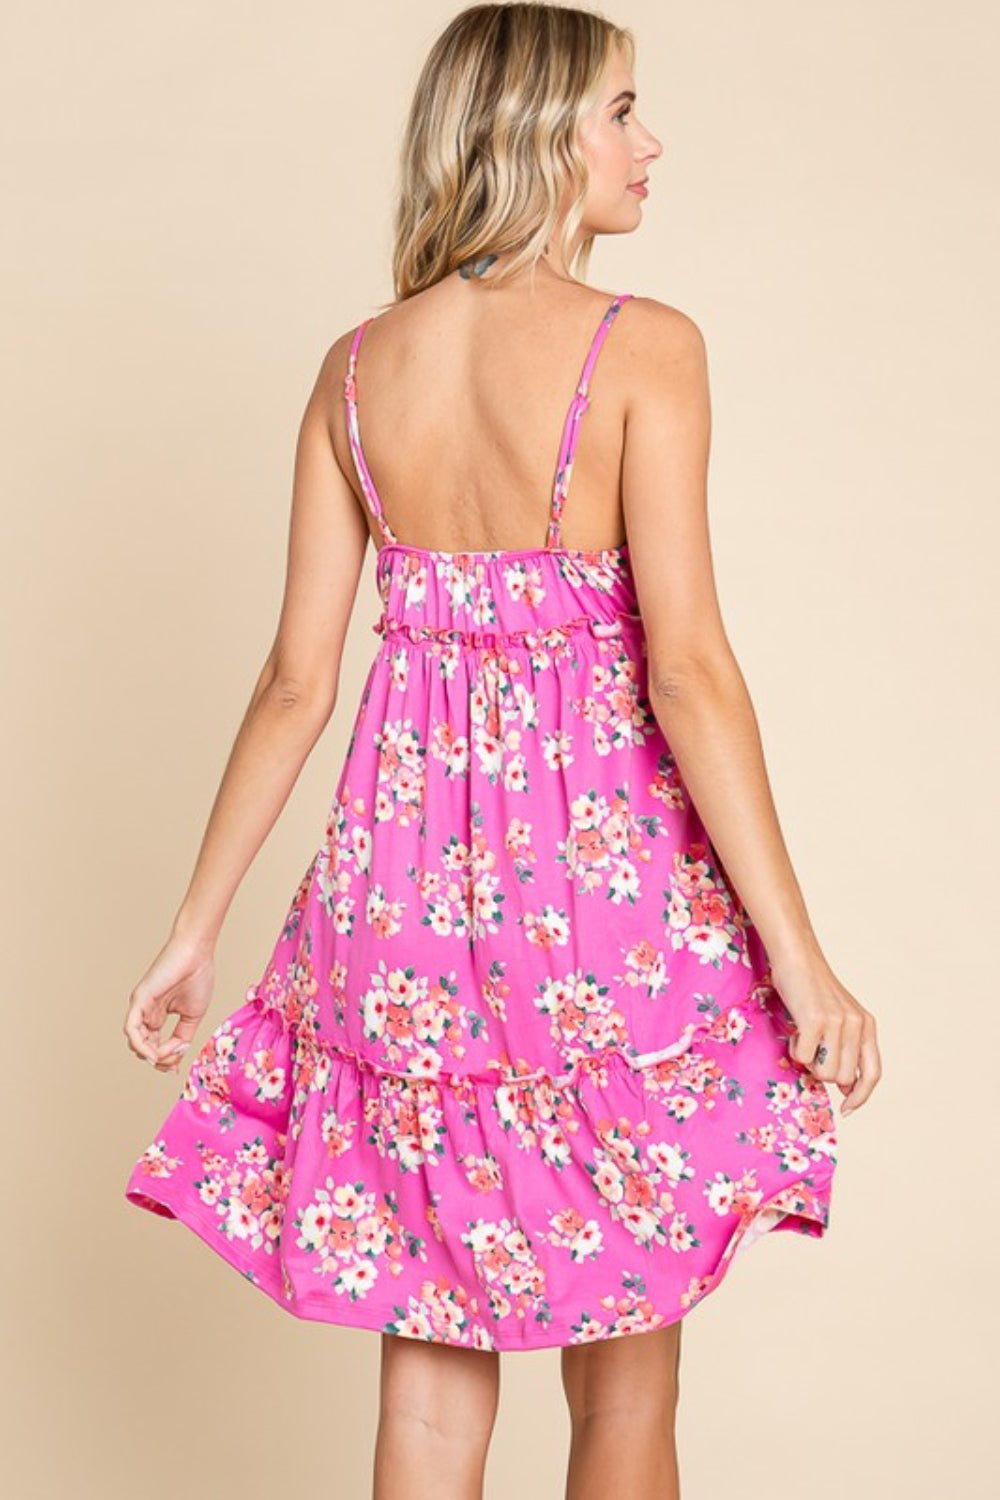 Floral Print Ruffled Mini Cami Dress in PinkMini DressCulture Code